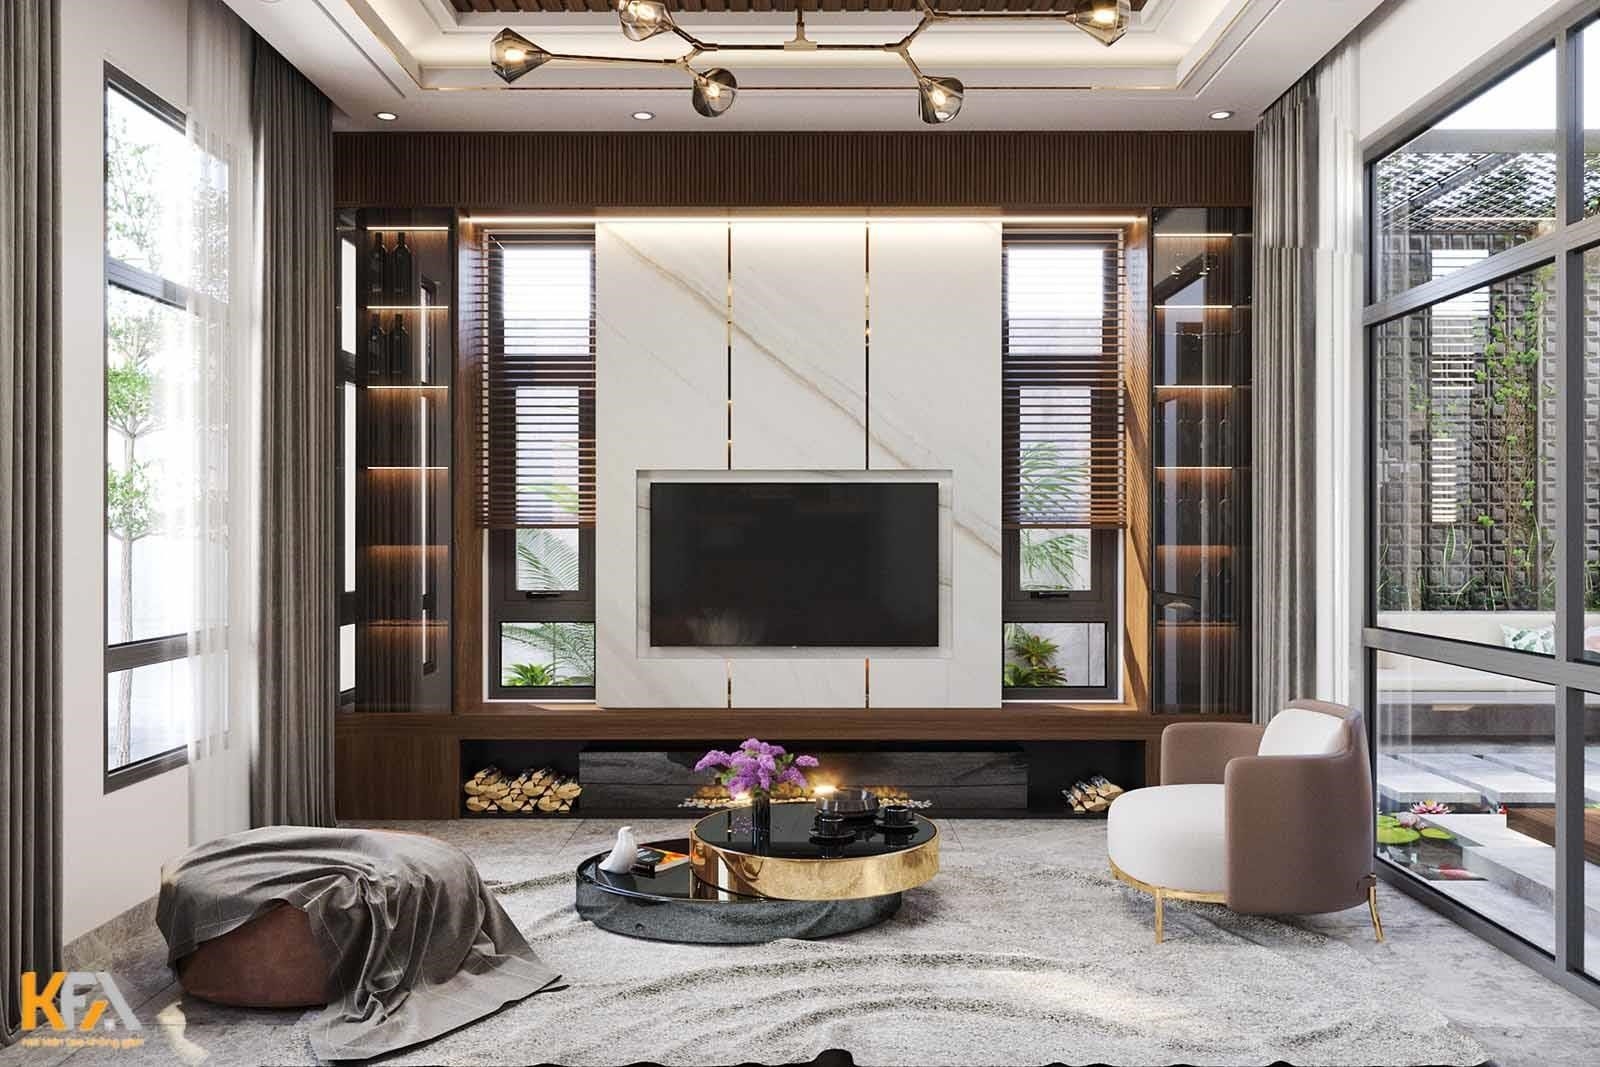 Phòng khách trong căn nhà mới được thiết kế với vách tivi sử dụng nhựa PVC giả đá kết hợp với kệ tivi bằng gỗ mang lại một phong cách độc đáo và hiện đại.